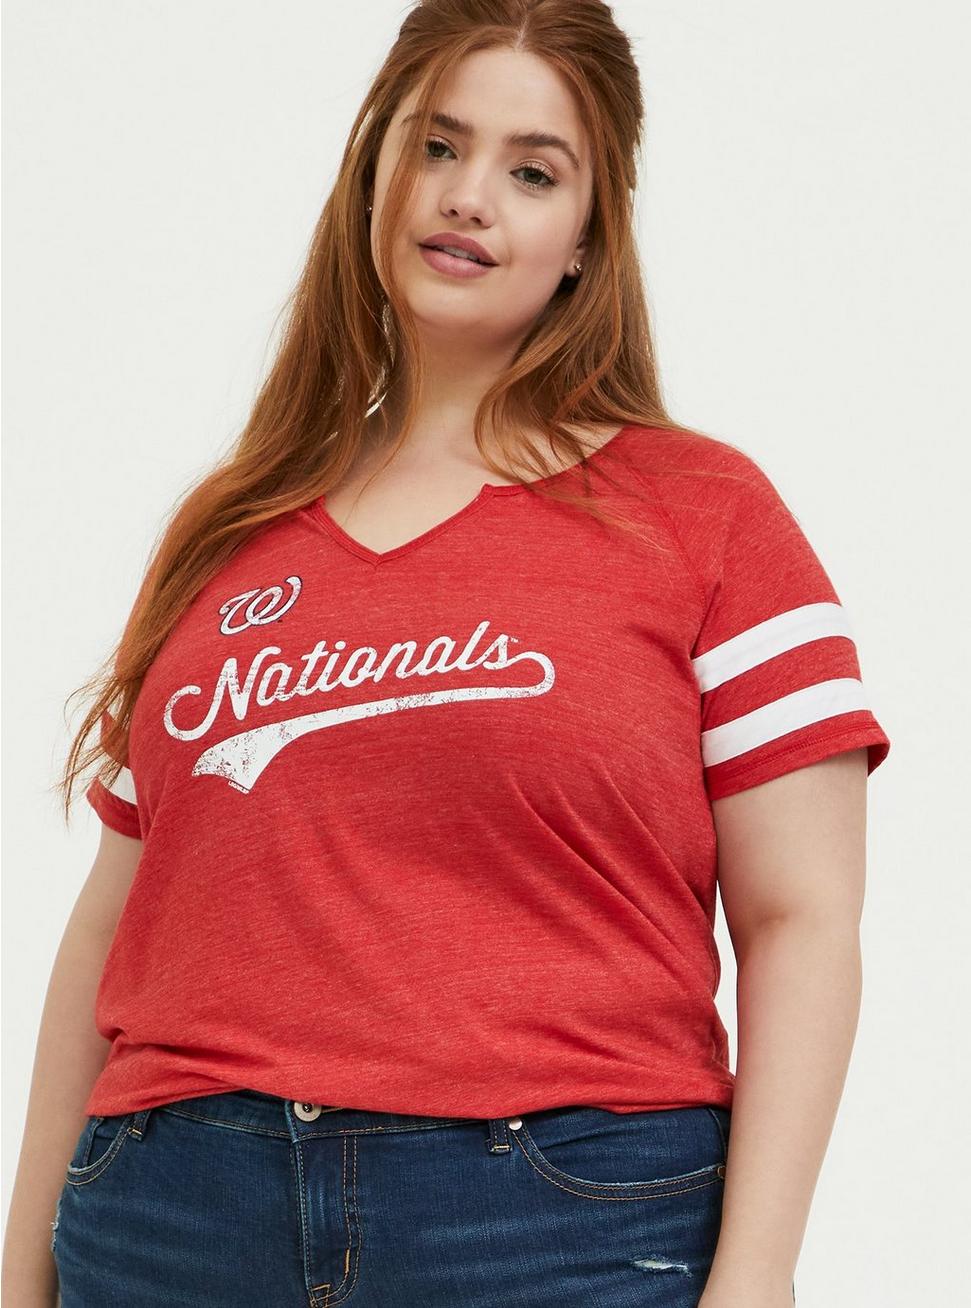 washington nationals plus size shirts